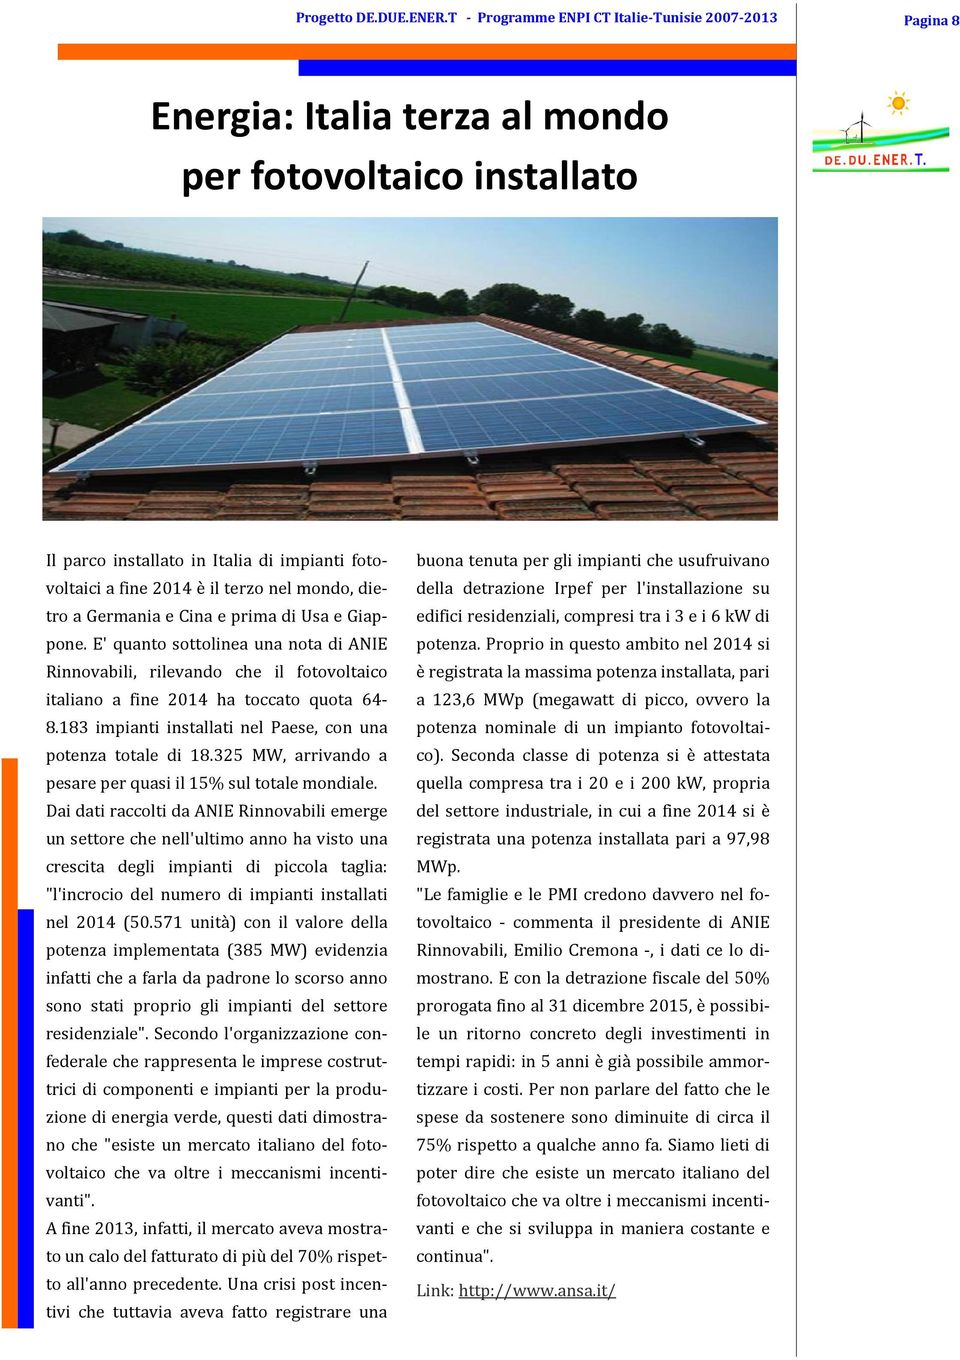 mondo, dietro a Germania e Cina e prima di Usa e Giappone. E' quanto sottolinea una nota di ANIE Rinnovabili, rilevando che il fotovoltaico italiano a fine 2014 ha toccato quota 64-8.